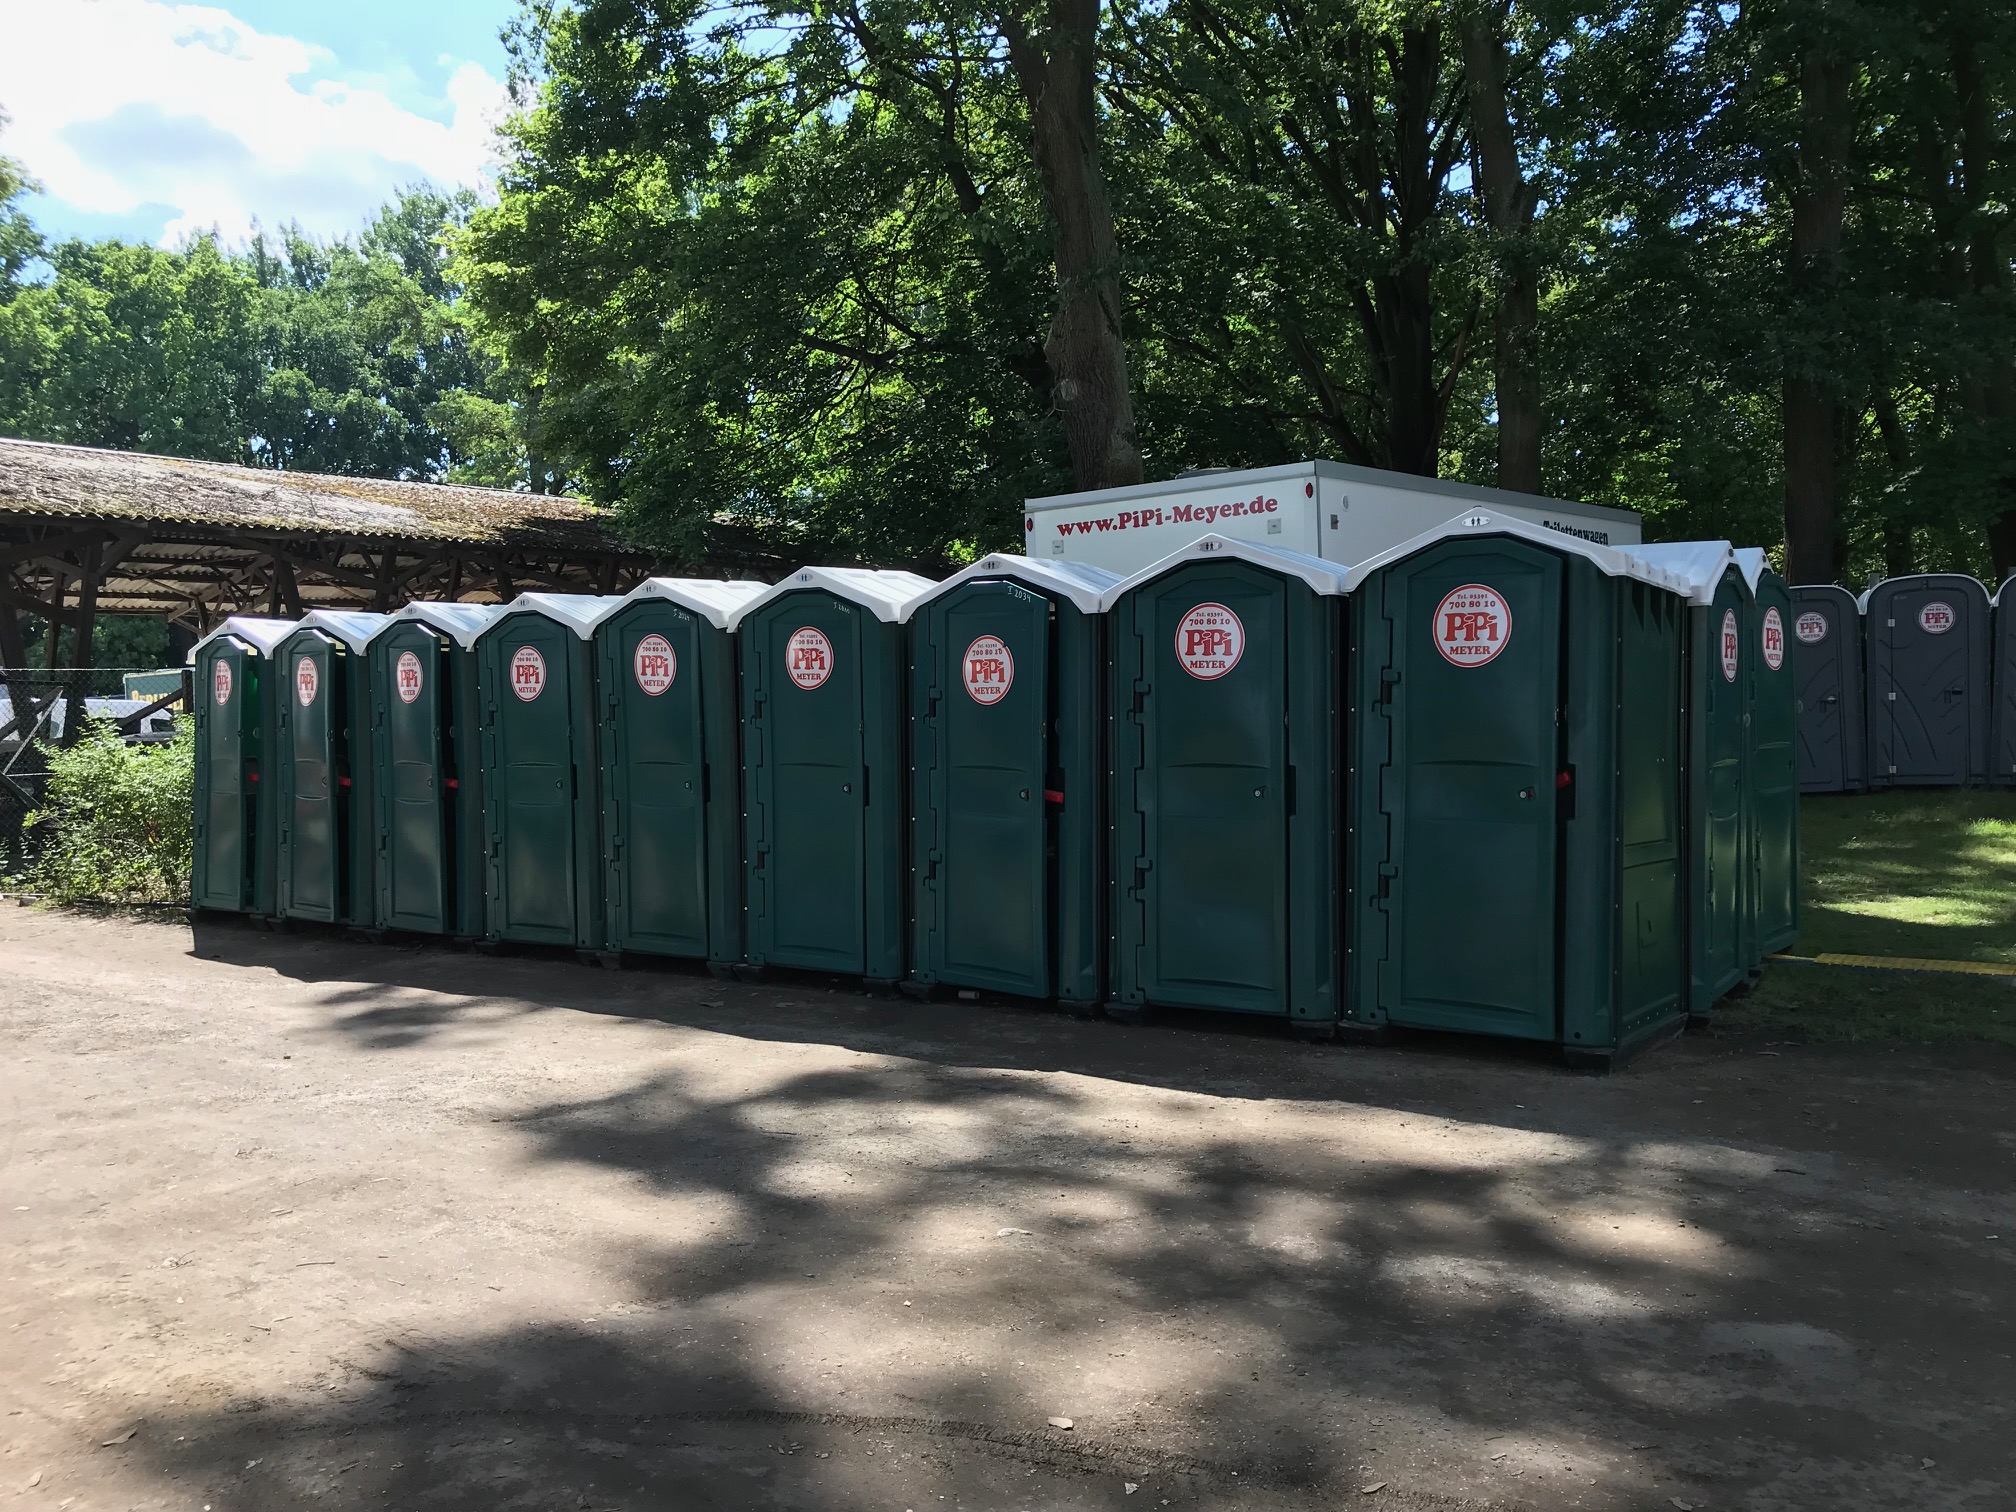 Eine Reihe grüner mobiler Toilettenkabinen von Pipi Meyer, aufgestellt im Freien unter Bäumen, mit einem mobilen Toilettenwagen im Hintergrund.